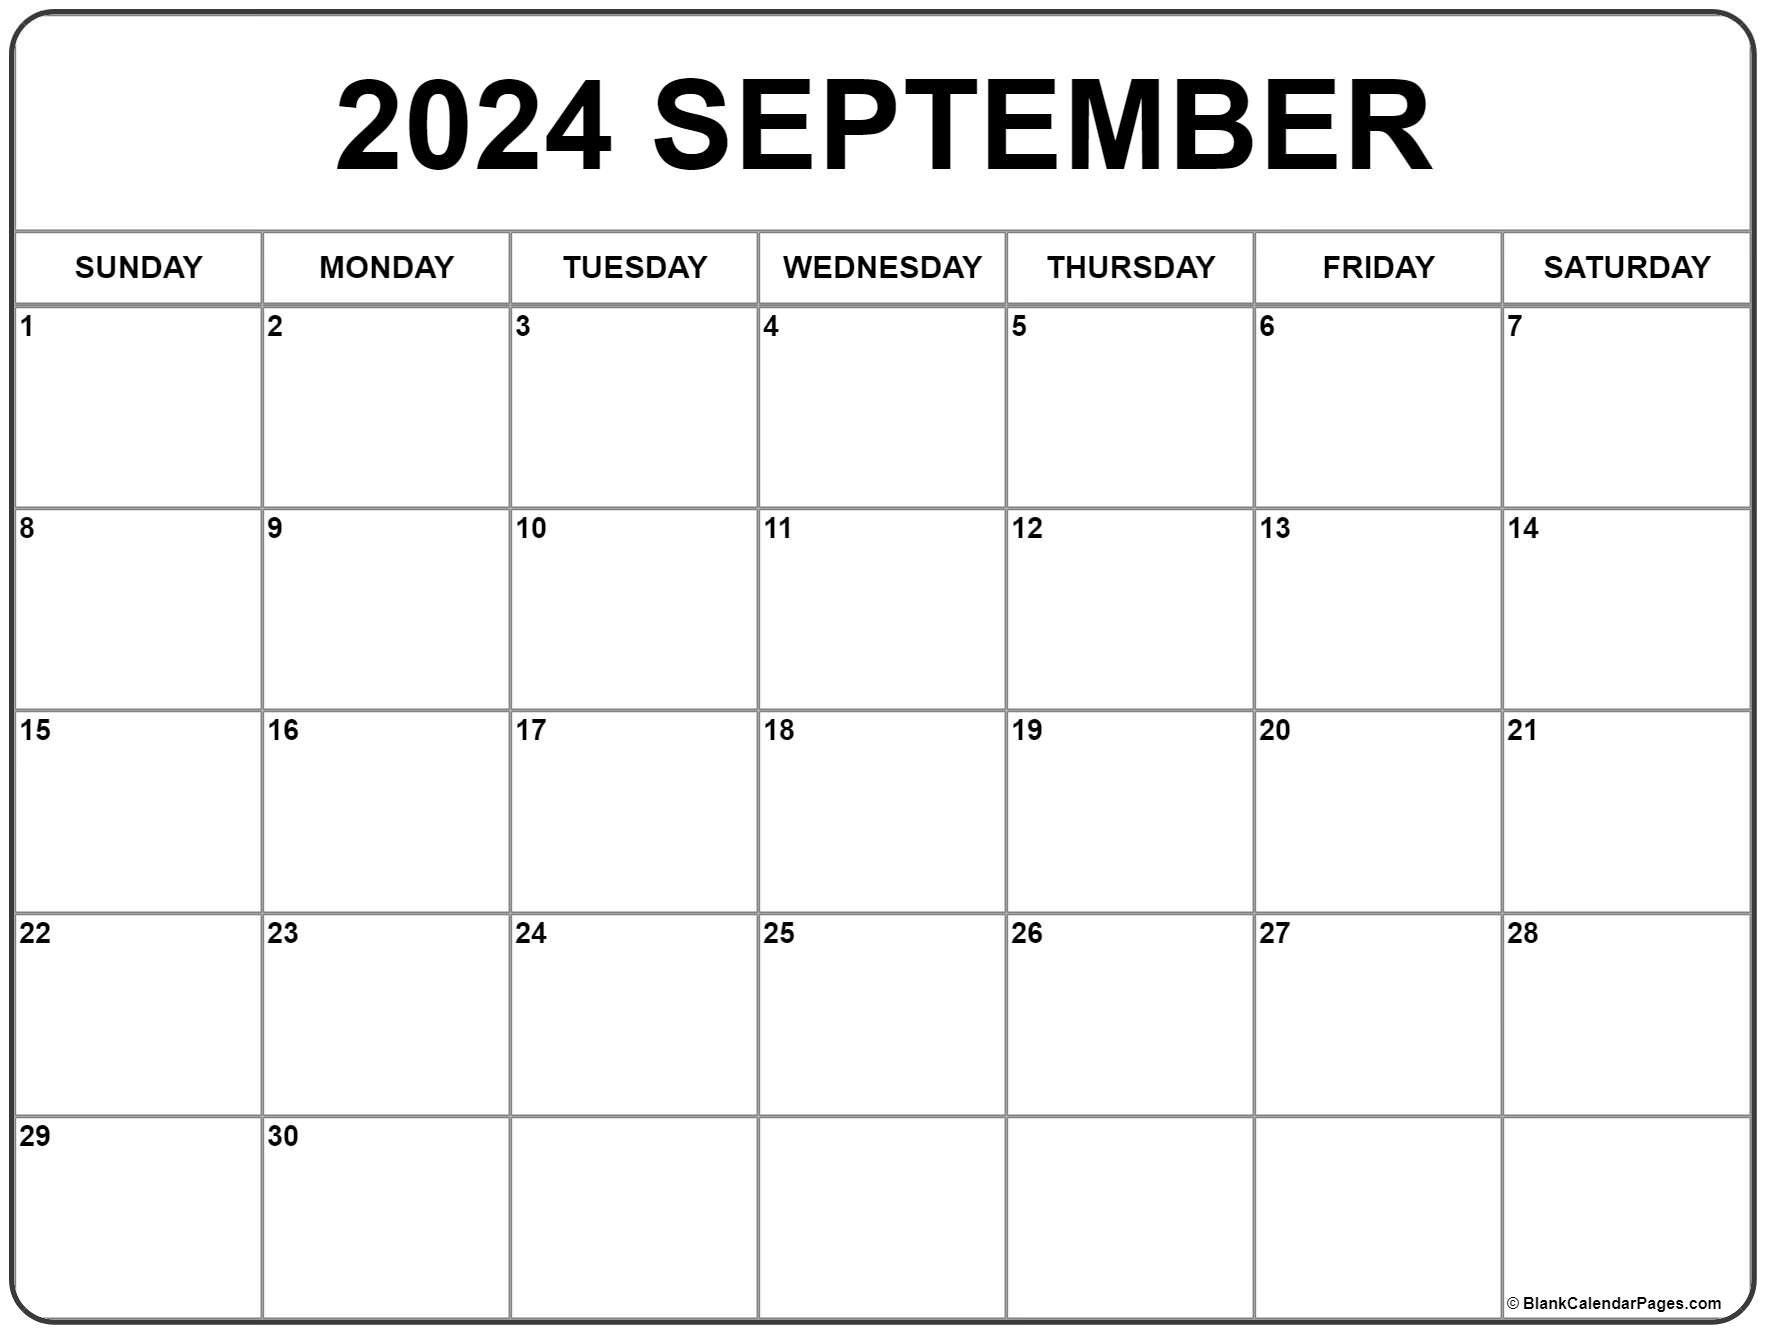 September 2022 Calendar Printable Free September 2022 Calendar | Free Printable Calendar Templates